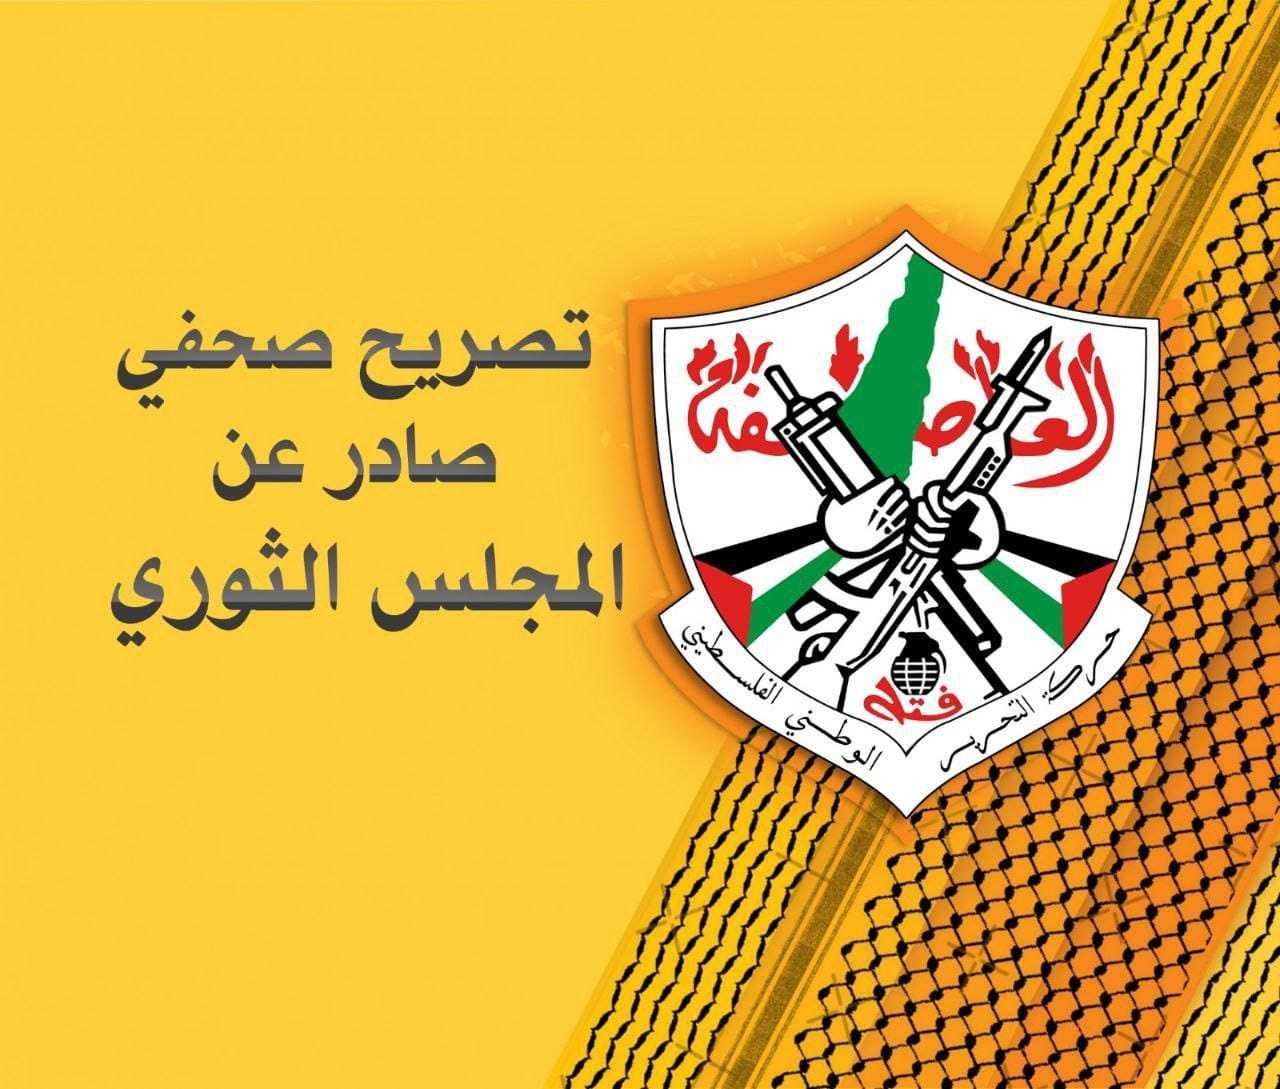 المجلس الثوري لحركة فتح : ما يتعرض له القائد مروان البرغوثي في سجون الاحتلال خطير ولا يمكن السكوت عنه